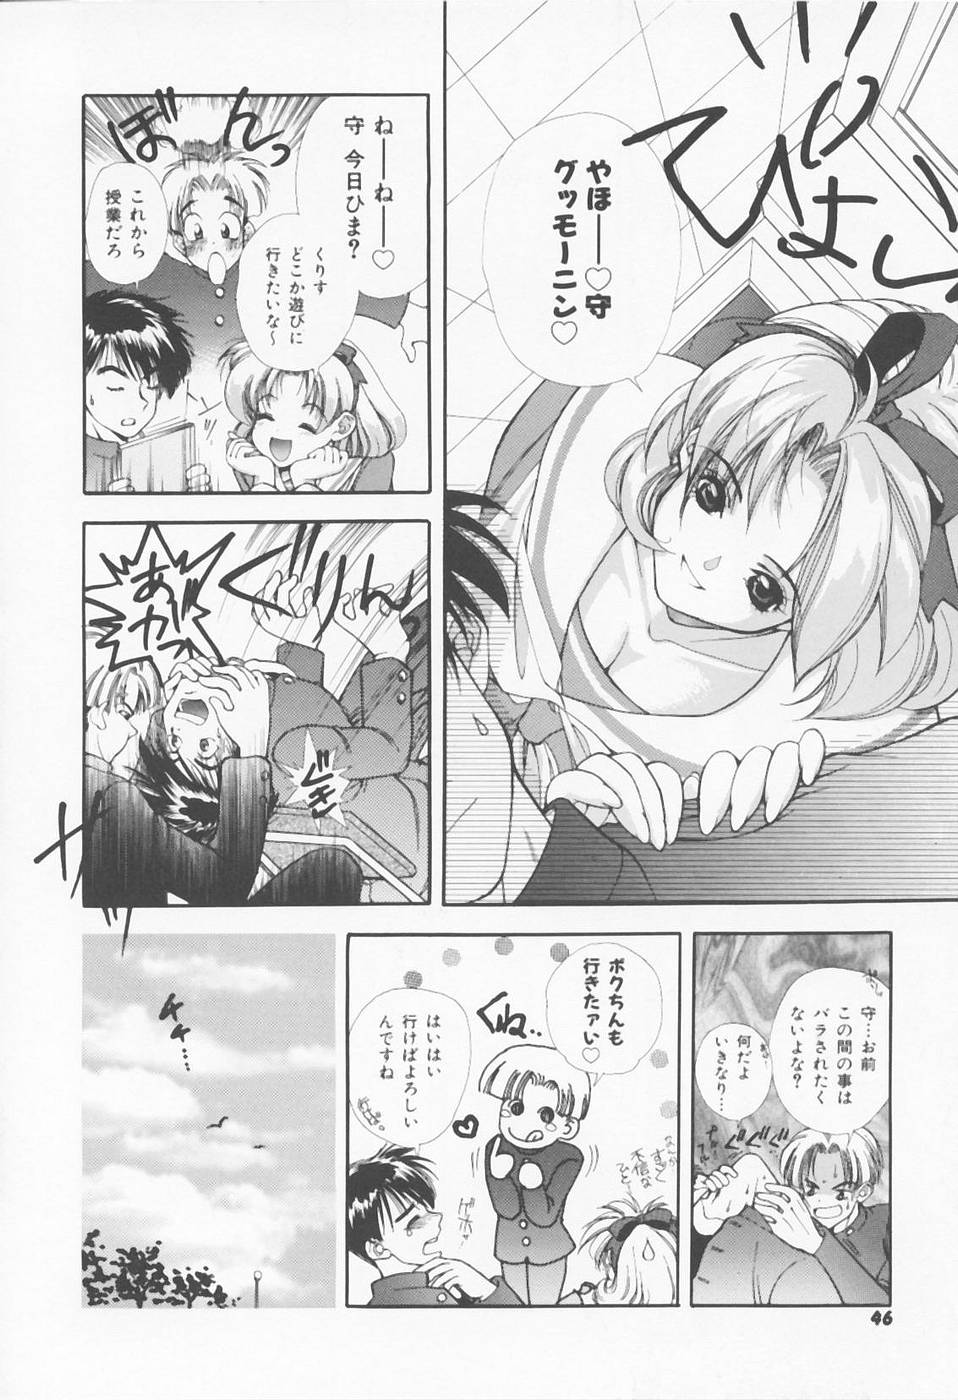 [Sensouji Kinoto] Call page 48 full